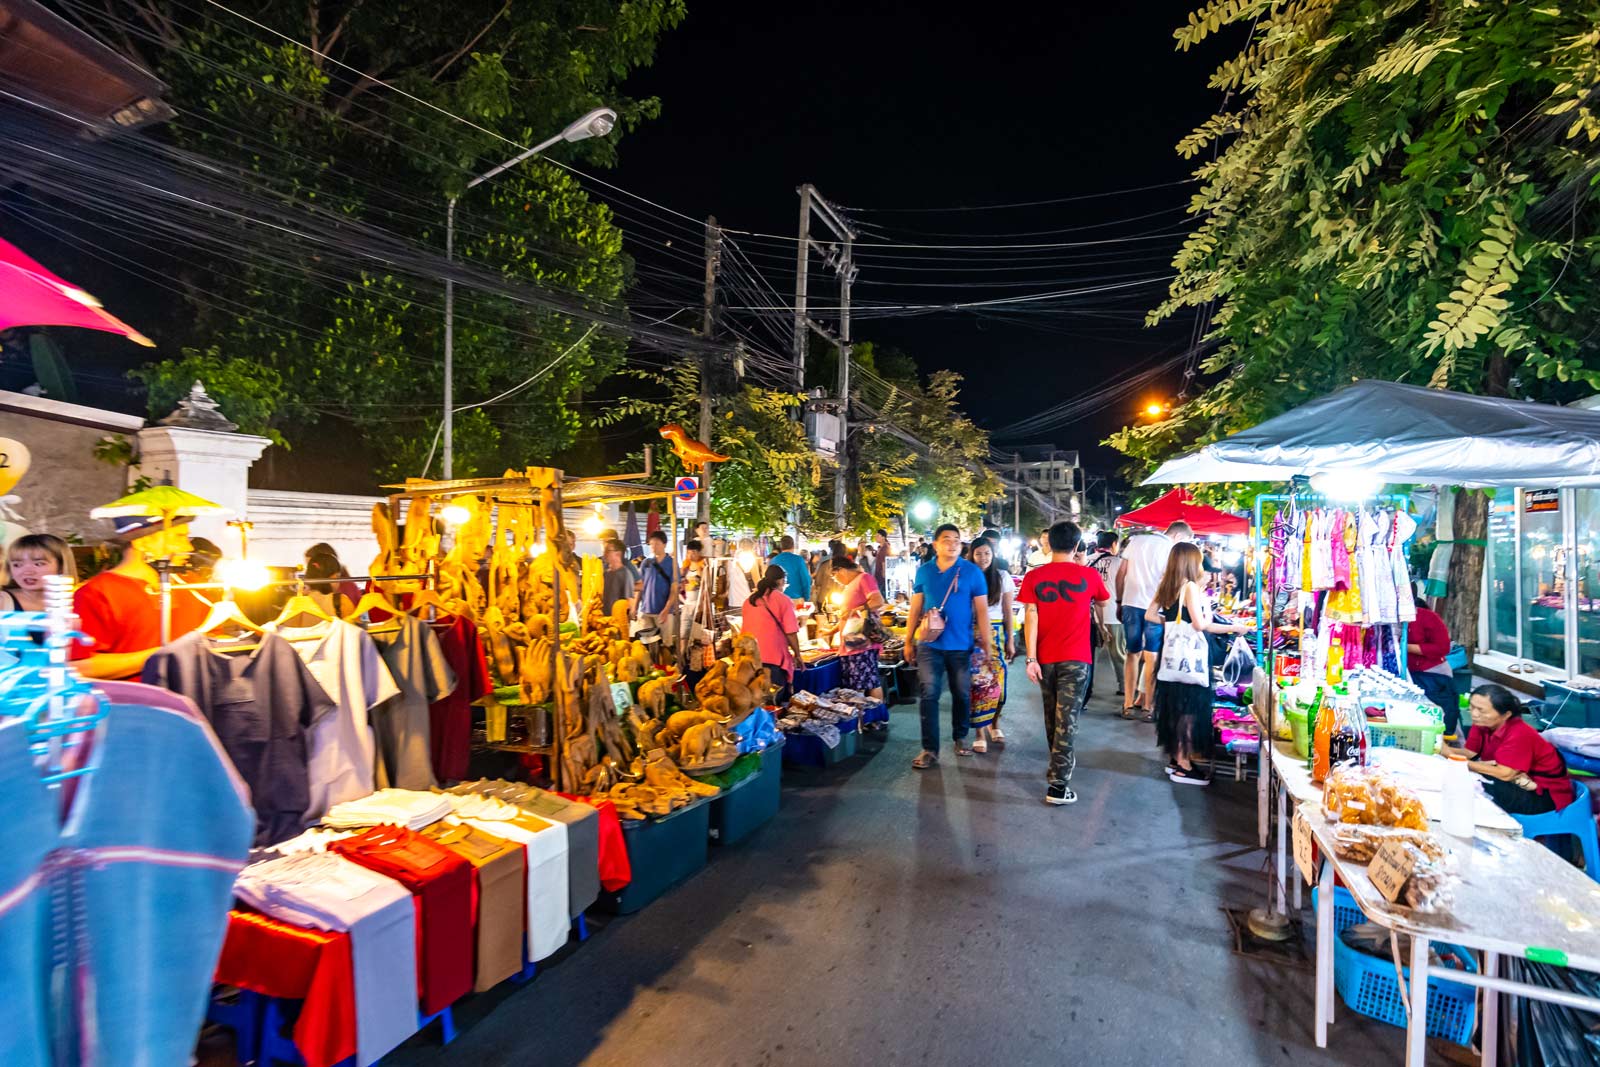 Visiting the Chiang Mai Night Market